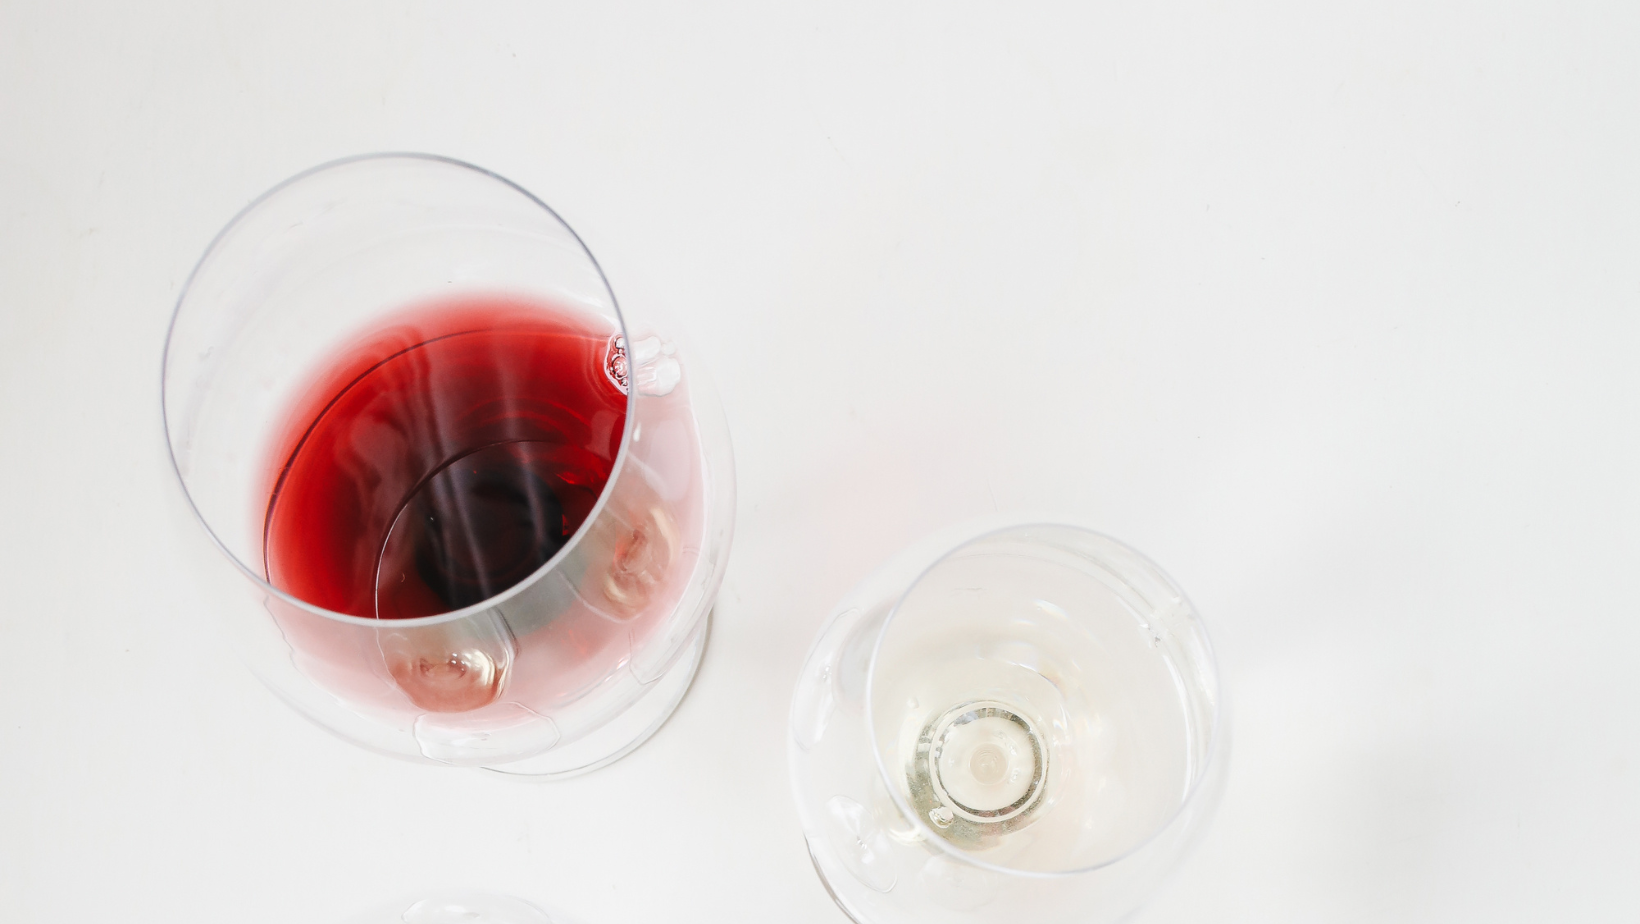 Vini rossi del Piemonte (D.O.C.): quali sono ottenuti da uve Nebbiolo?